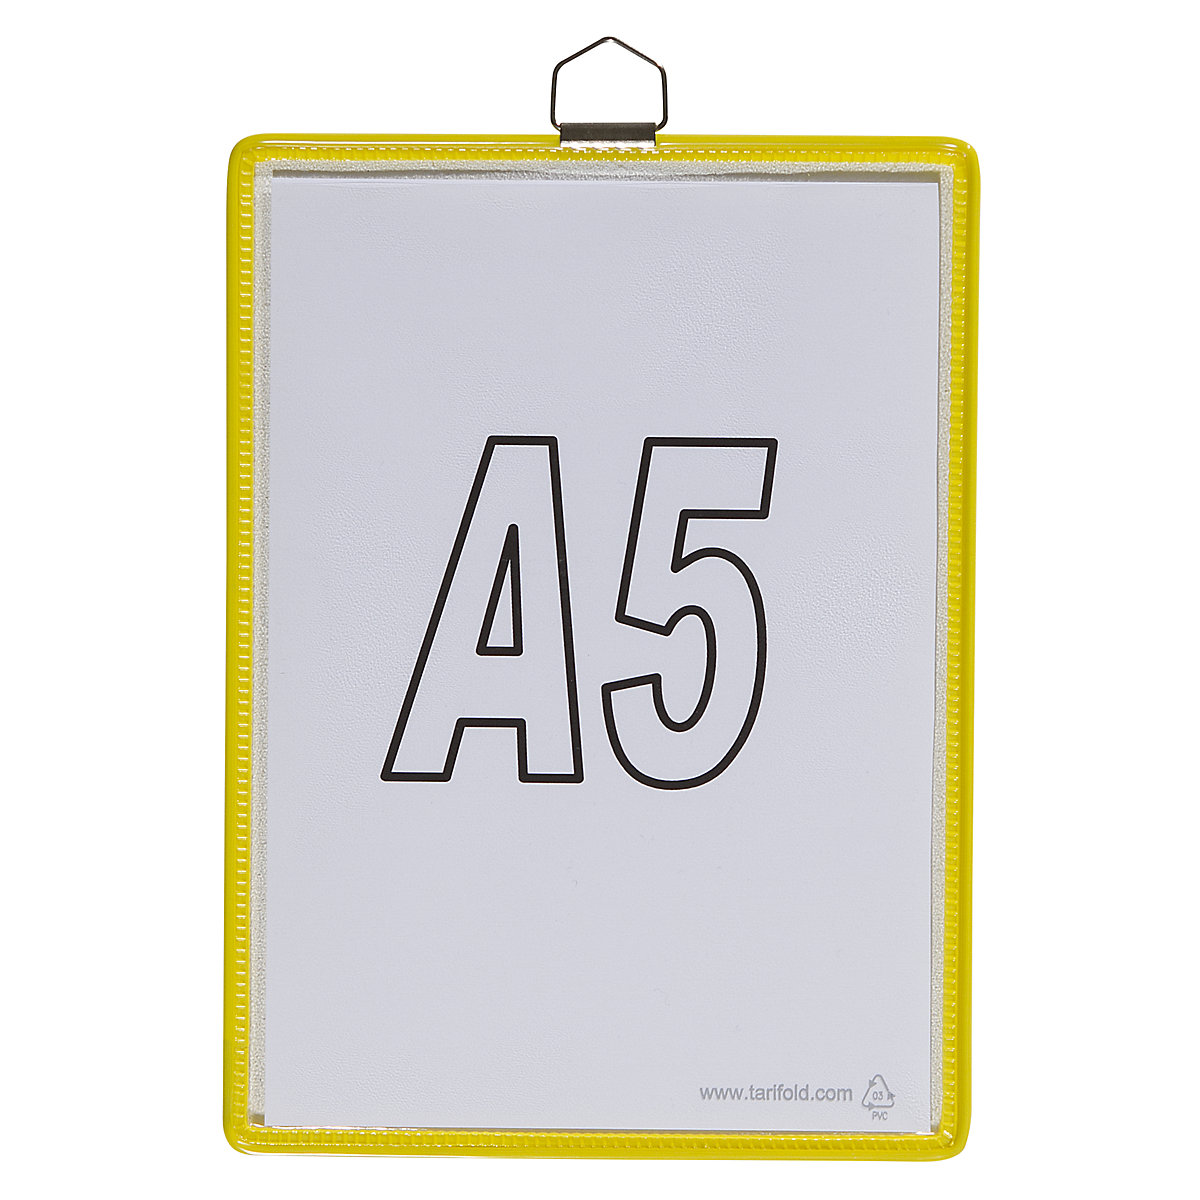 Bolsa transparente suspensa – Tarifold, para formato A5, amarelo, embalagem com 10 unidades-7